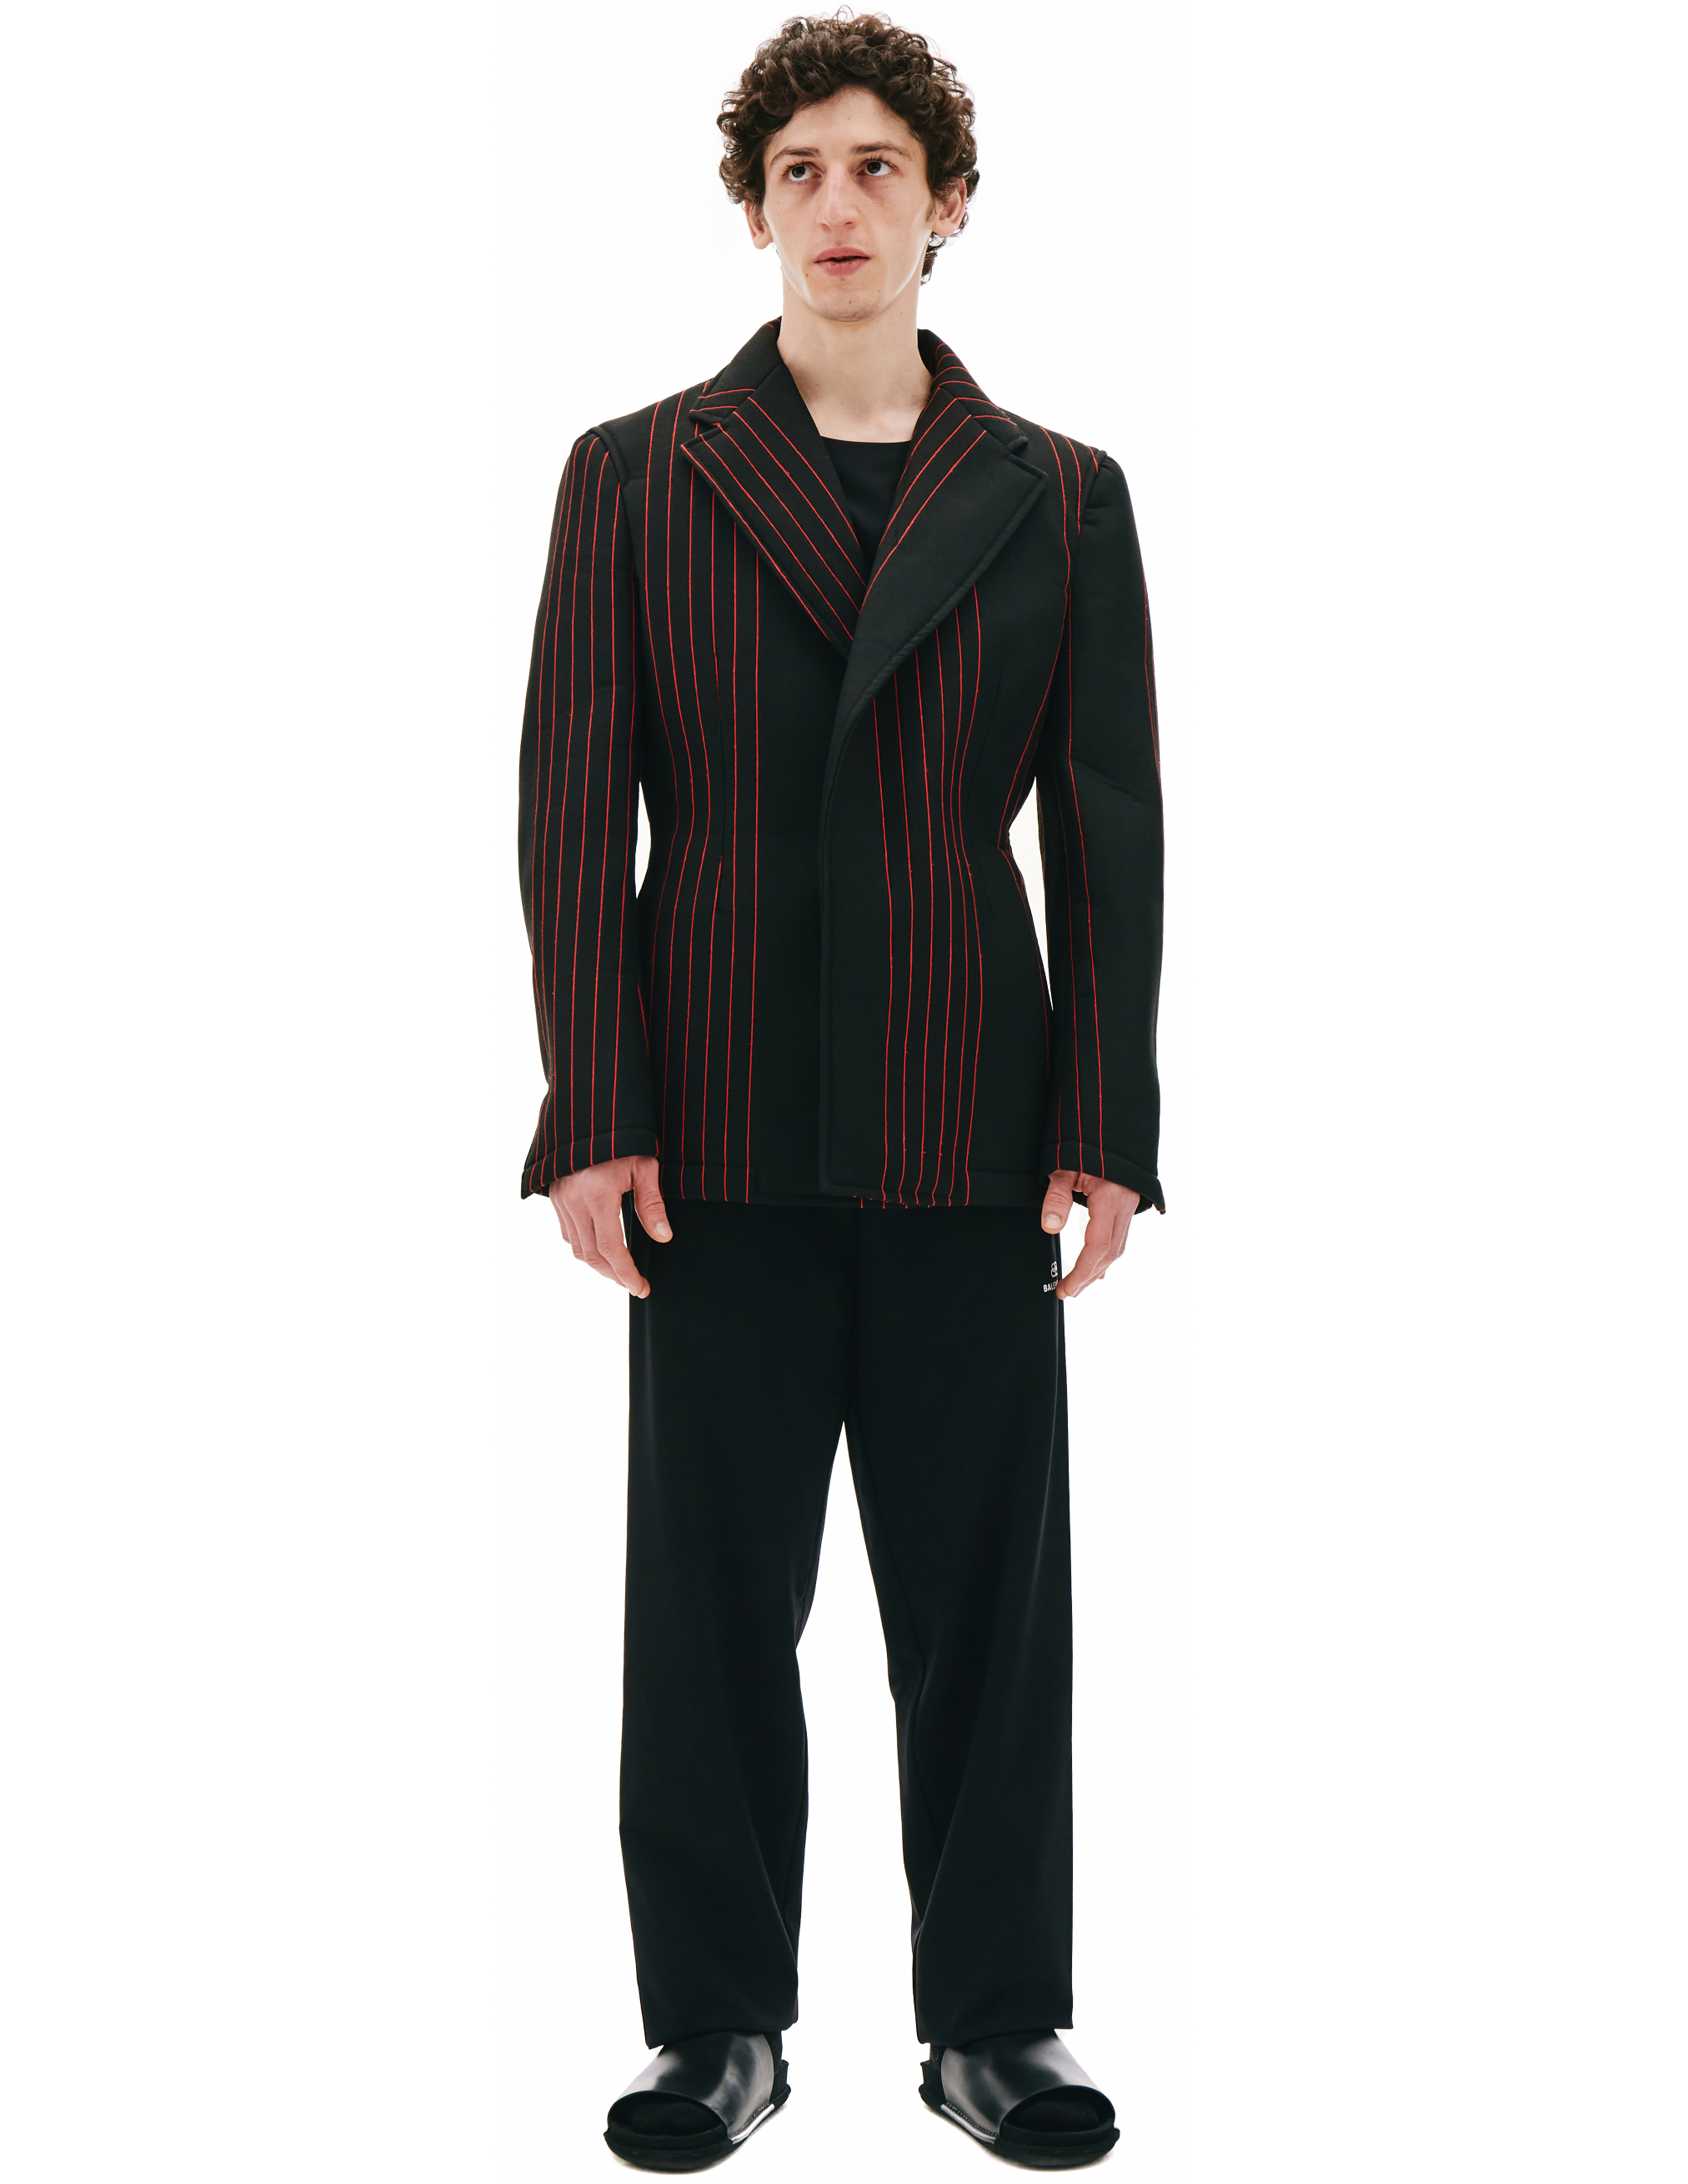 Черный пиджак в красную полоску - Comme des Garcons Homme plus PG-J058-051-1